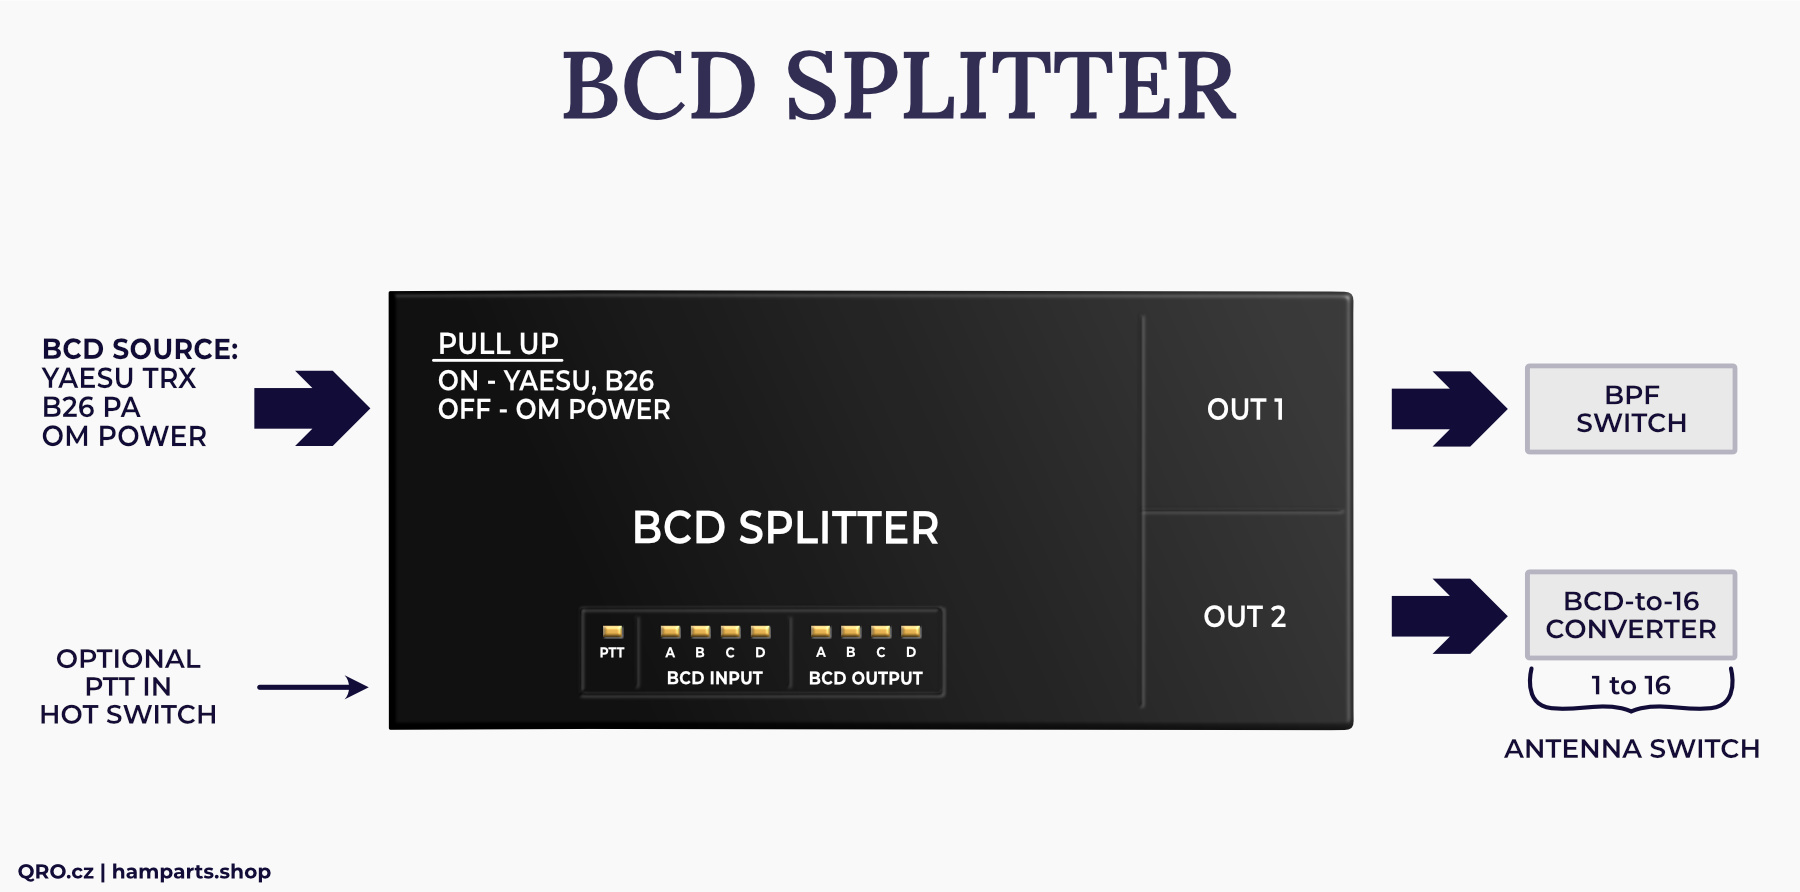 bcd splitter board by qro.cz hamparts.shop